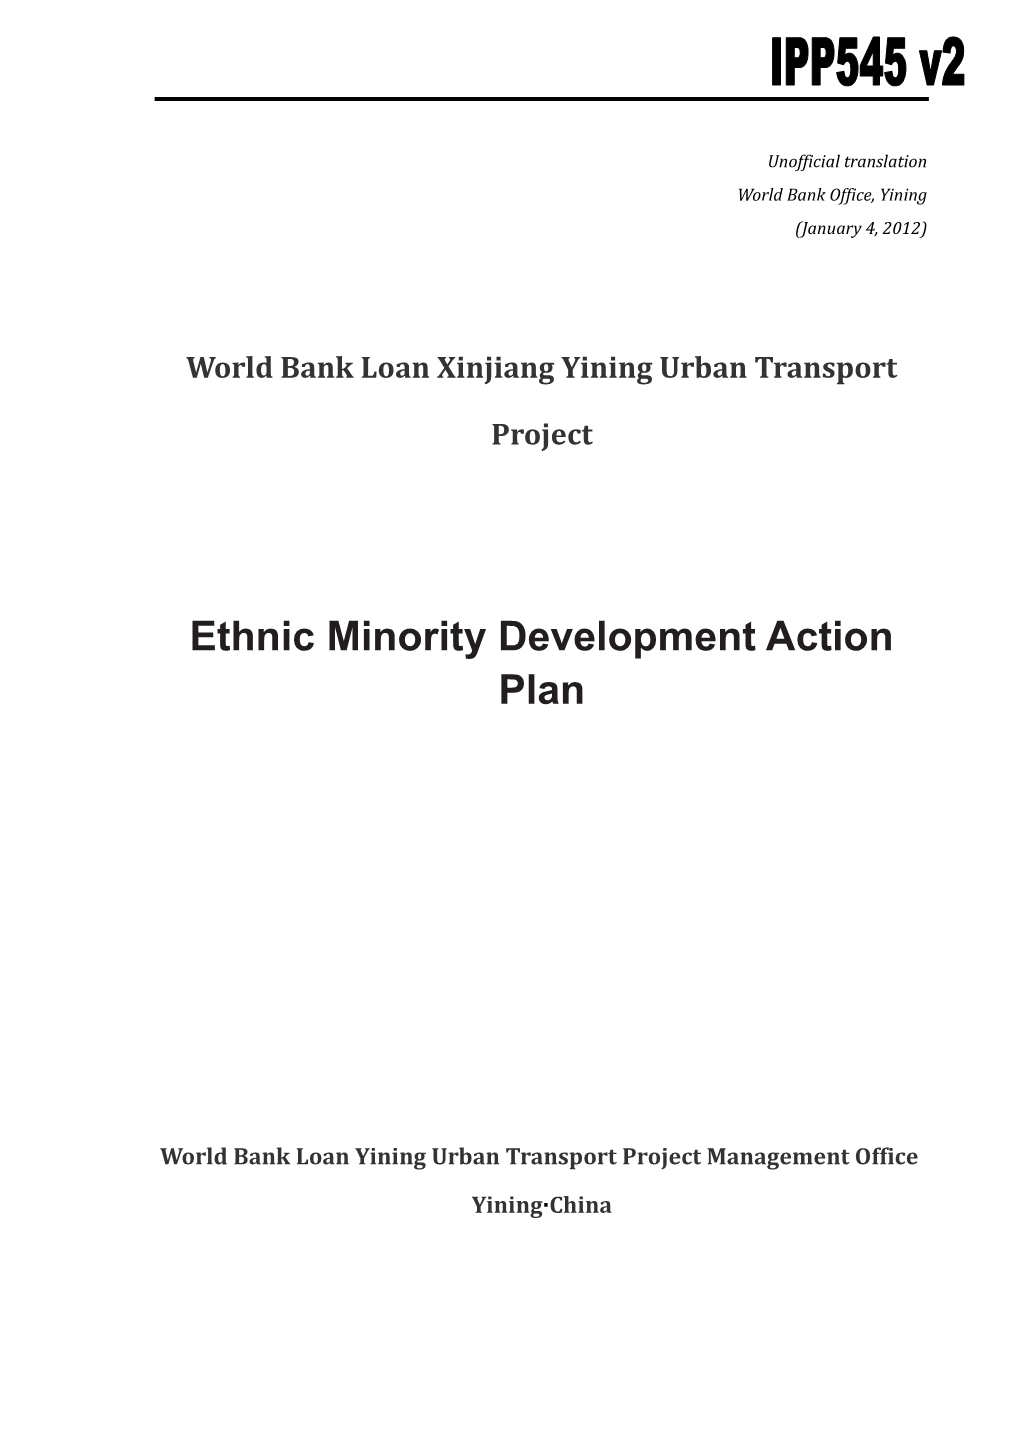 World Bank Loan Xinjiang Yining Urban Transport Project